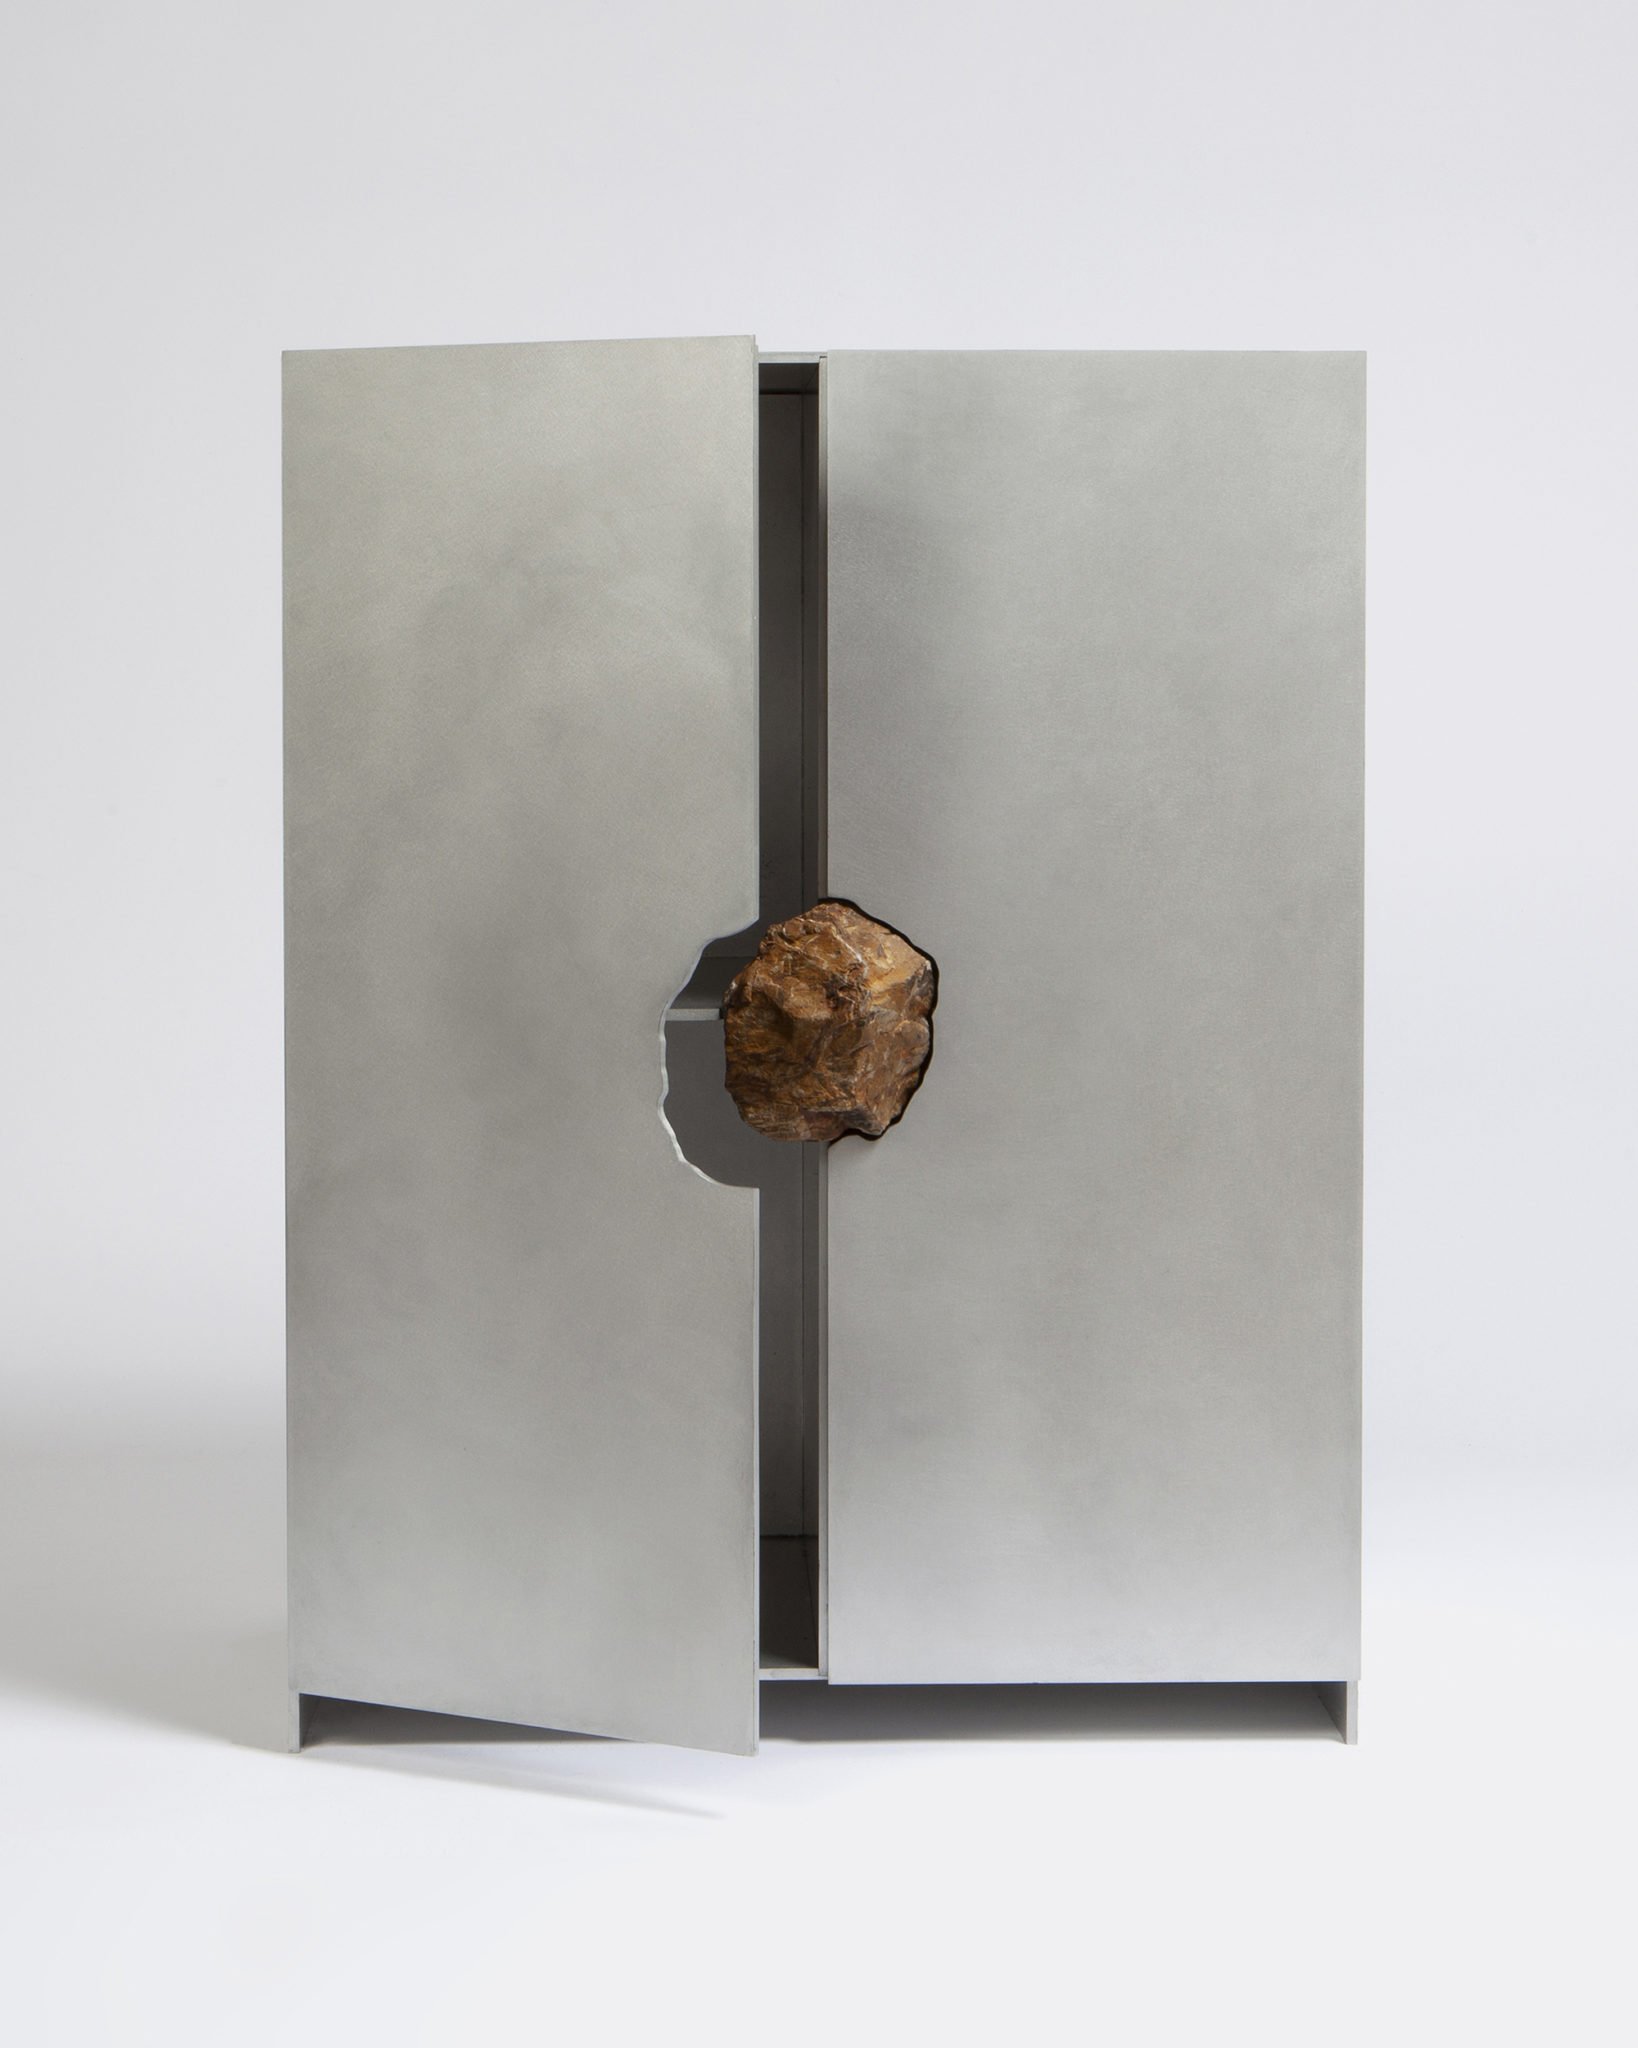 Maison et Objet 2020, Pierre de Valck, Cabinet with stone, Belgium Design booth